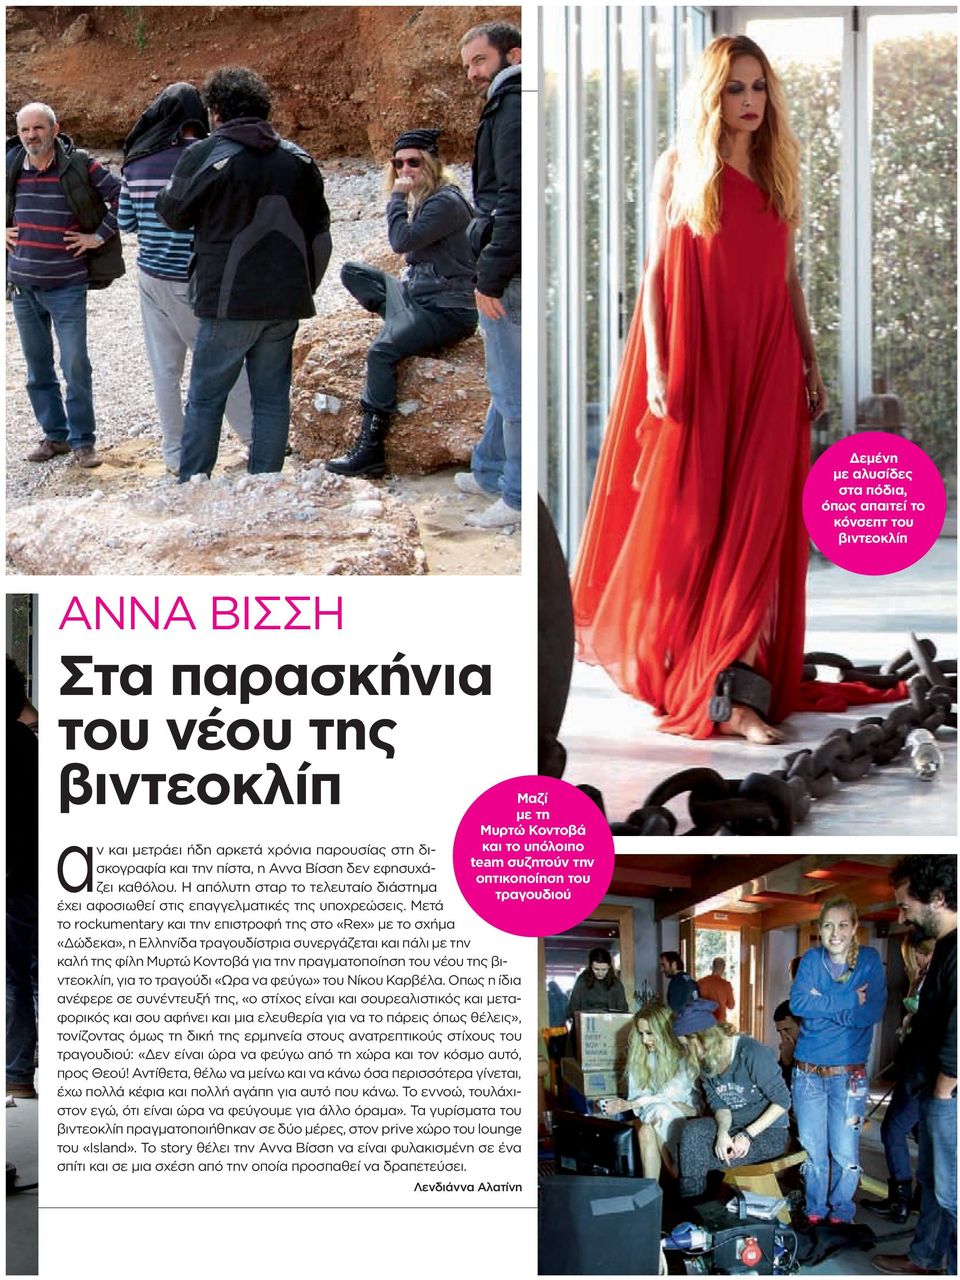 Μετά το rockumentary και την επιστροφή της στο «Rex» με το σχήμα «Δώδεκα», η Ελληνίδα τραγουδίστρια συνεργάζεται και πάλι με την καλή της φίλη Μυρτώ Κοντοβά για την πραγματοποίηση του νέου της